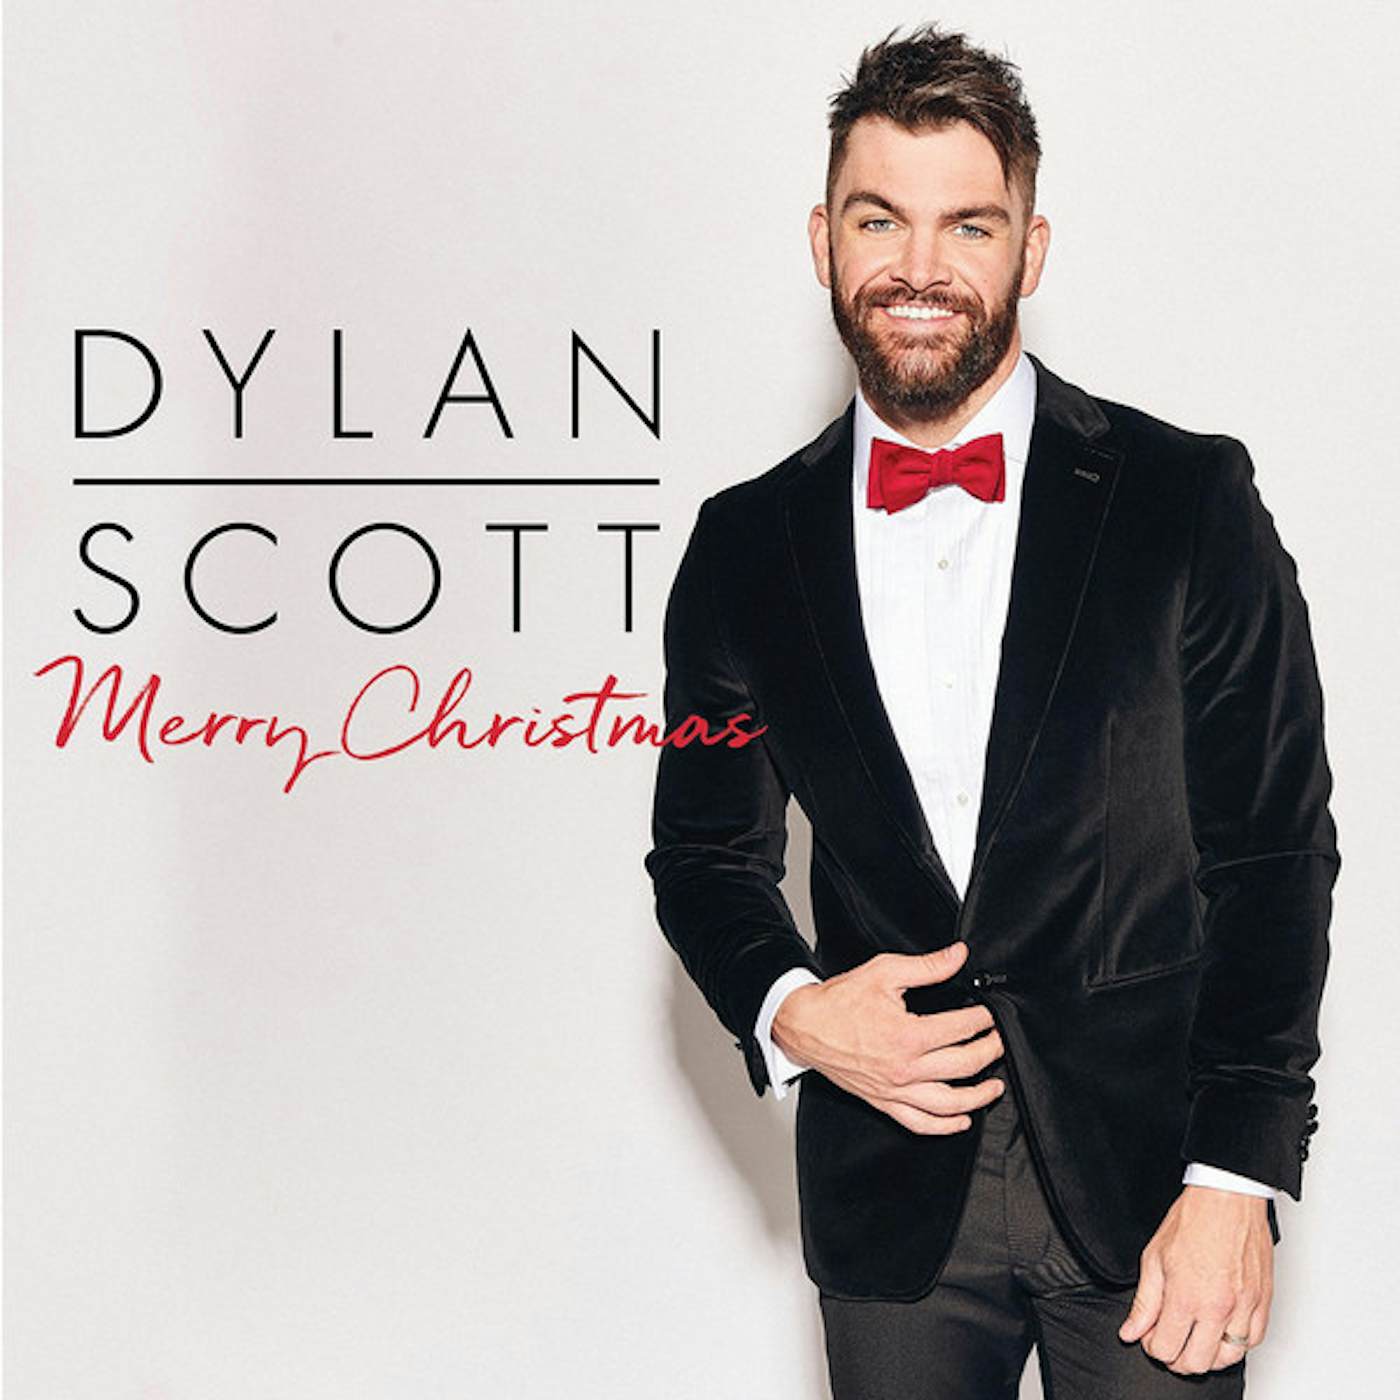 Dylan Scott MERRY CHRISTMAS CD